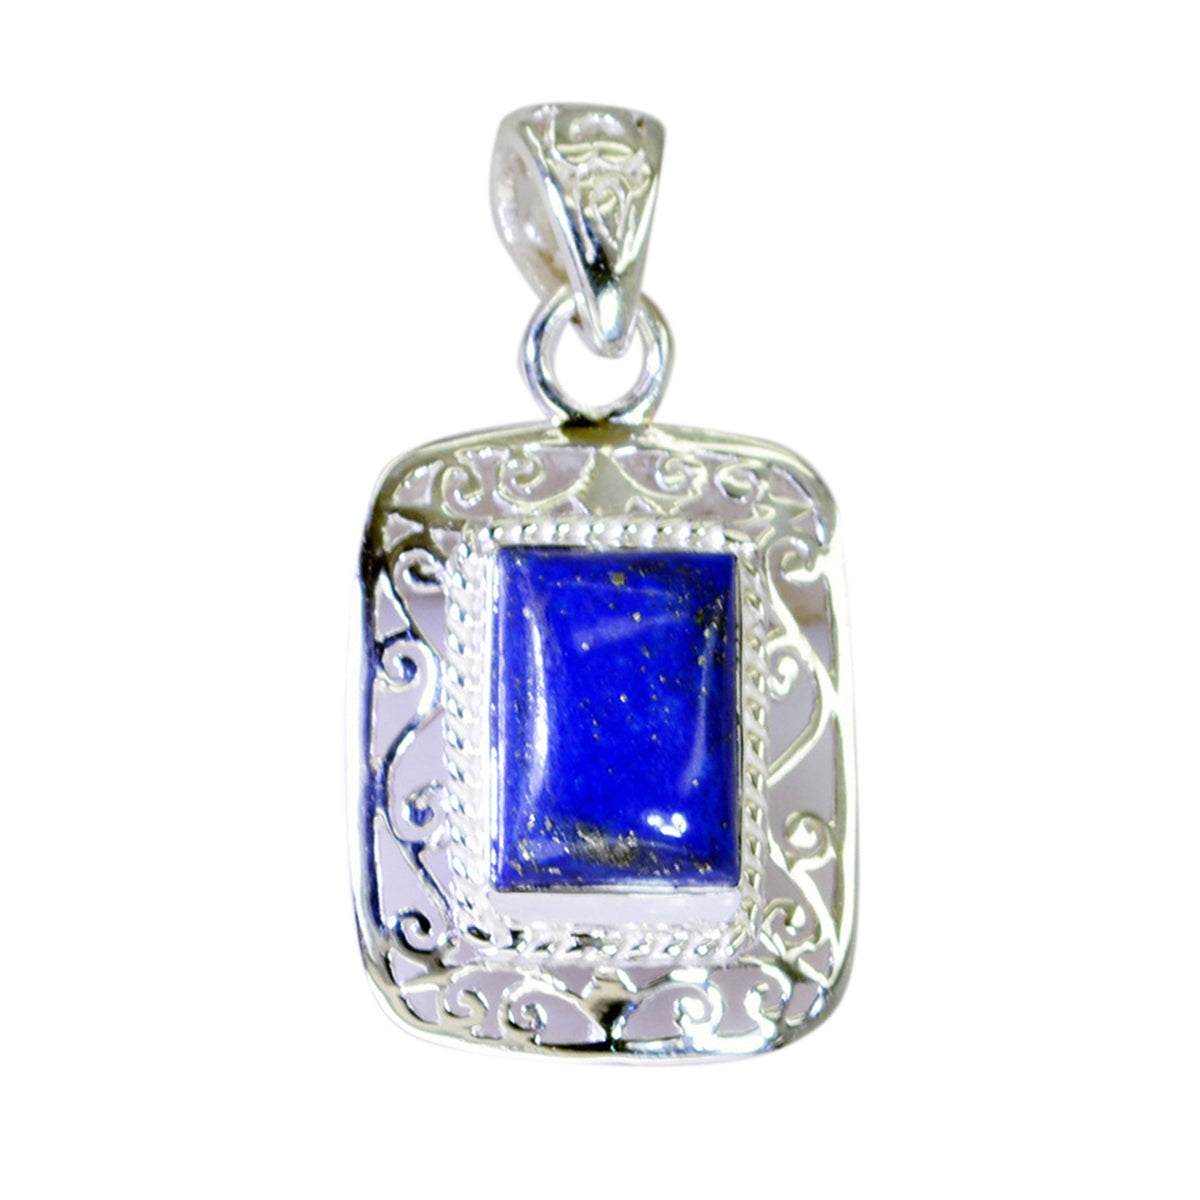 riyo underbara ädelsten oktagon cabochon nevy blå lapis lazuli 1188 sterling silver hänge present till flickvän